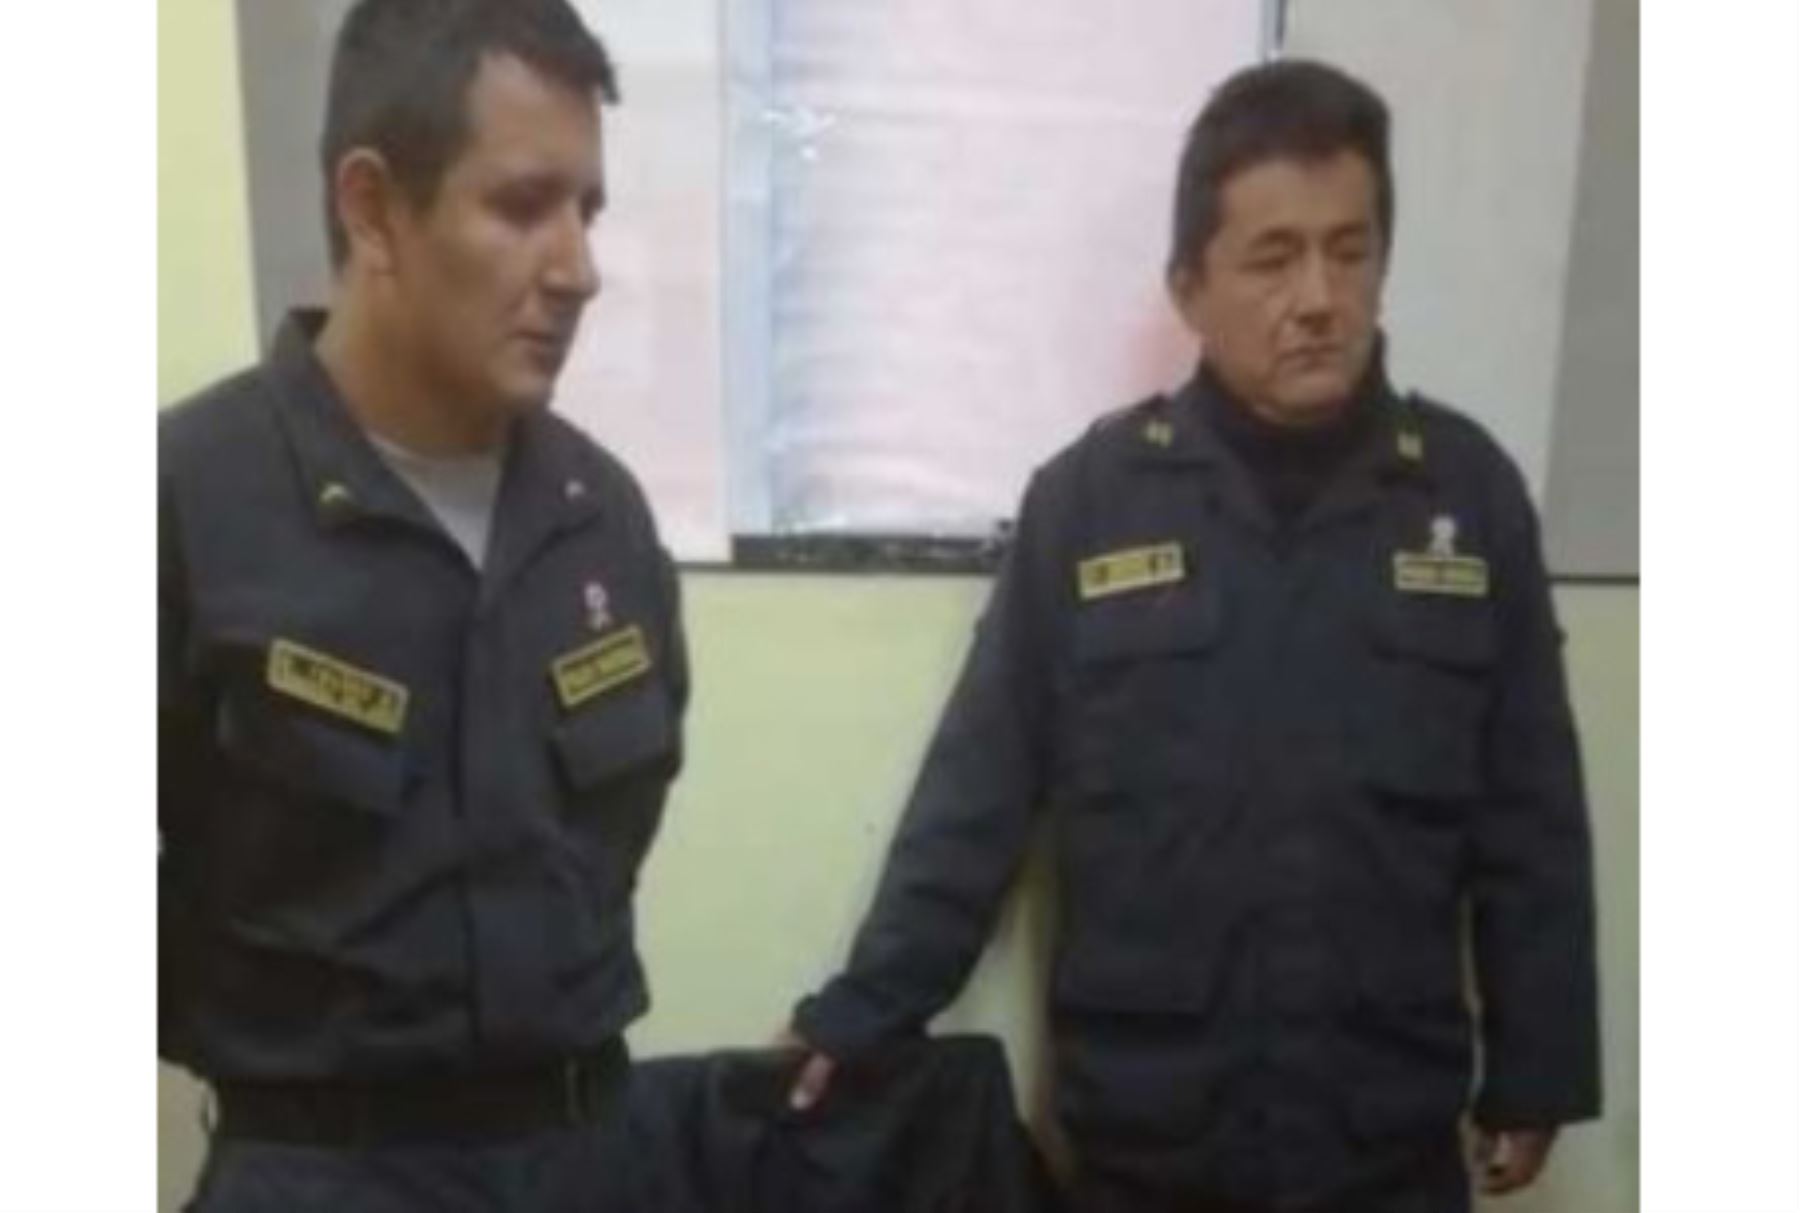 Dos suboficiales de la Policía Nacional del Perú fueron detenidos por agentes de la División de la Policía Anticorrupción de Trujillo, luego que cobraran una coima de 170 soles a un ciudadano en la comisaría de Huamachuco, provincia de Sánchez Carrión, región La Libertad.